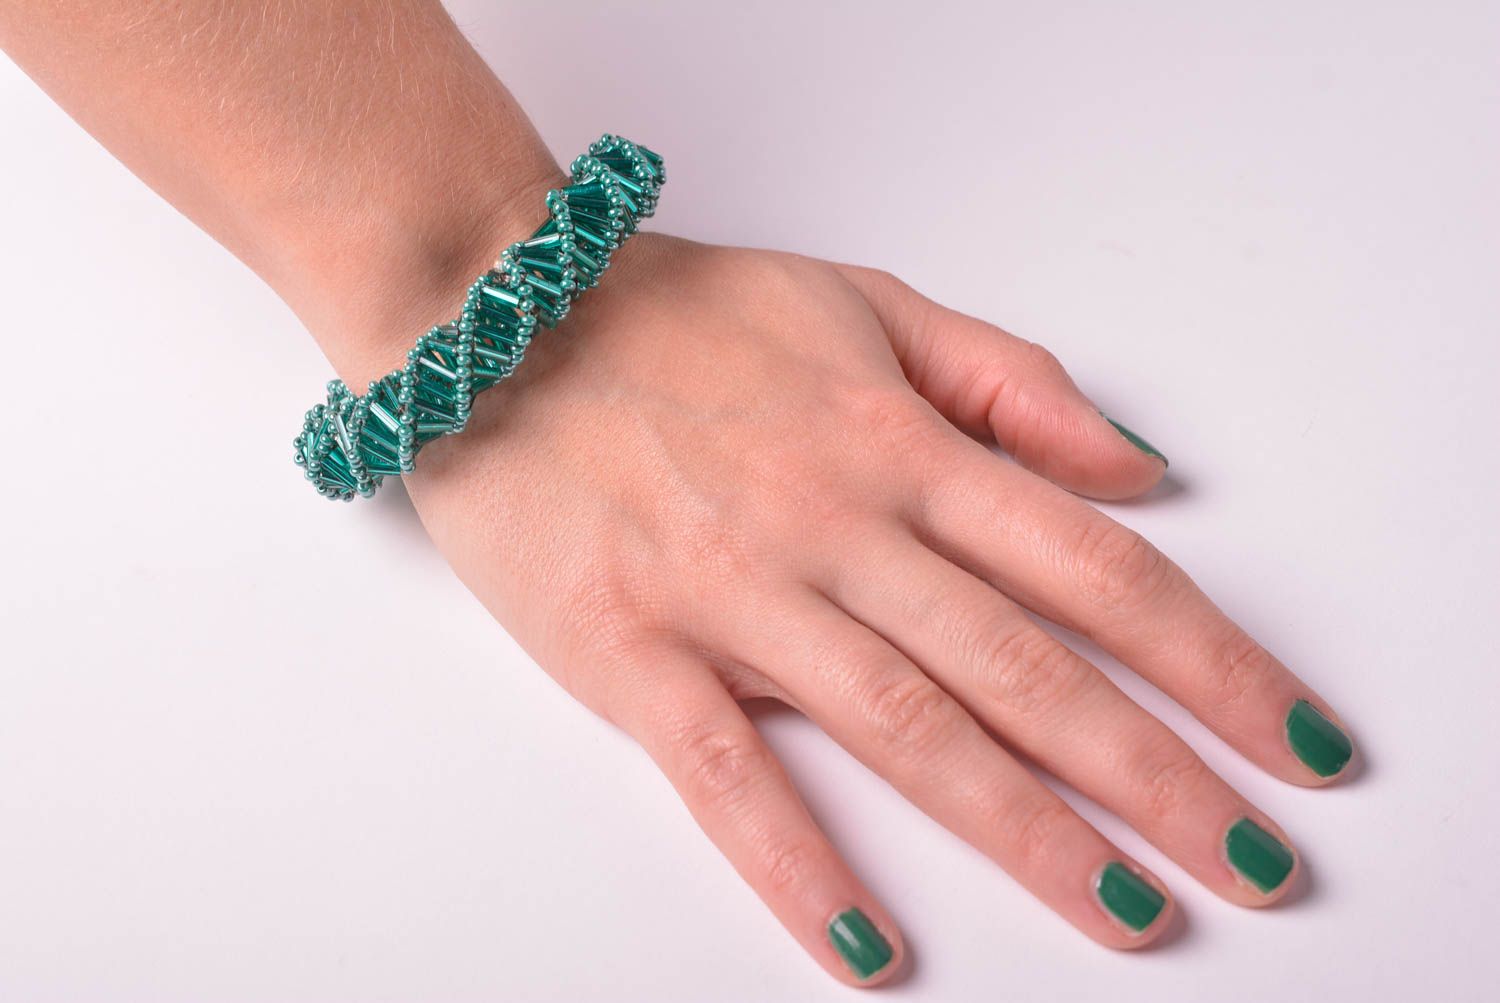 Браслет из бисера хэнд мэйд модный браслет зеленый стильное украшение из бисера фото 1